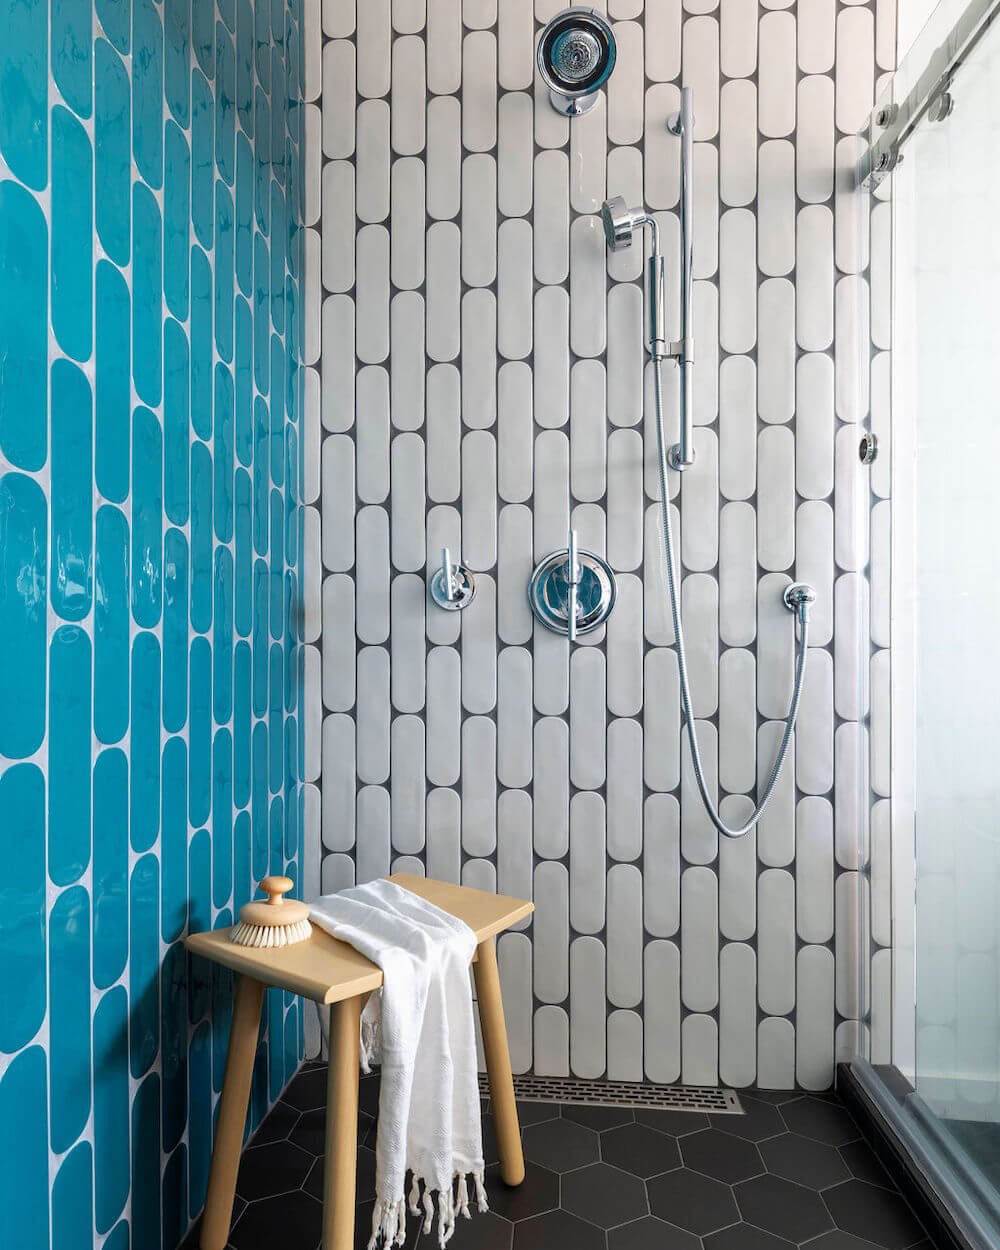 Sequoyah Oakland Bathroom Remodel - Shower Hardware.jpg